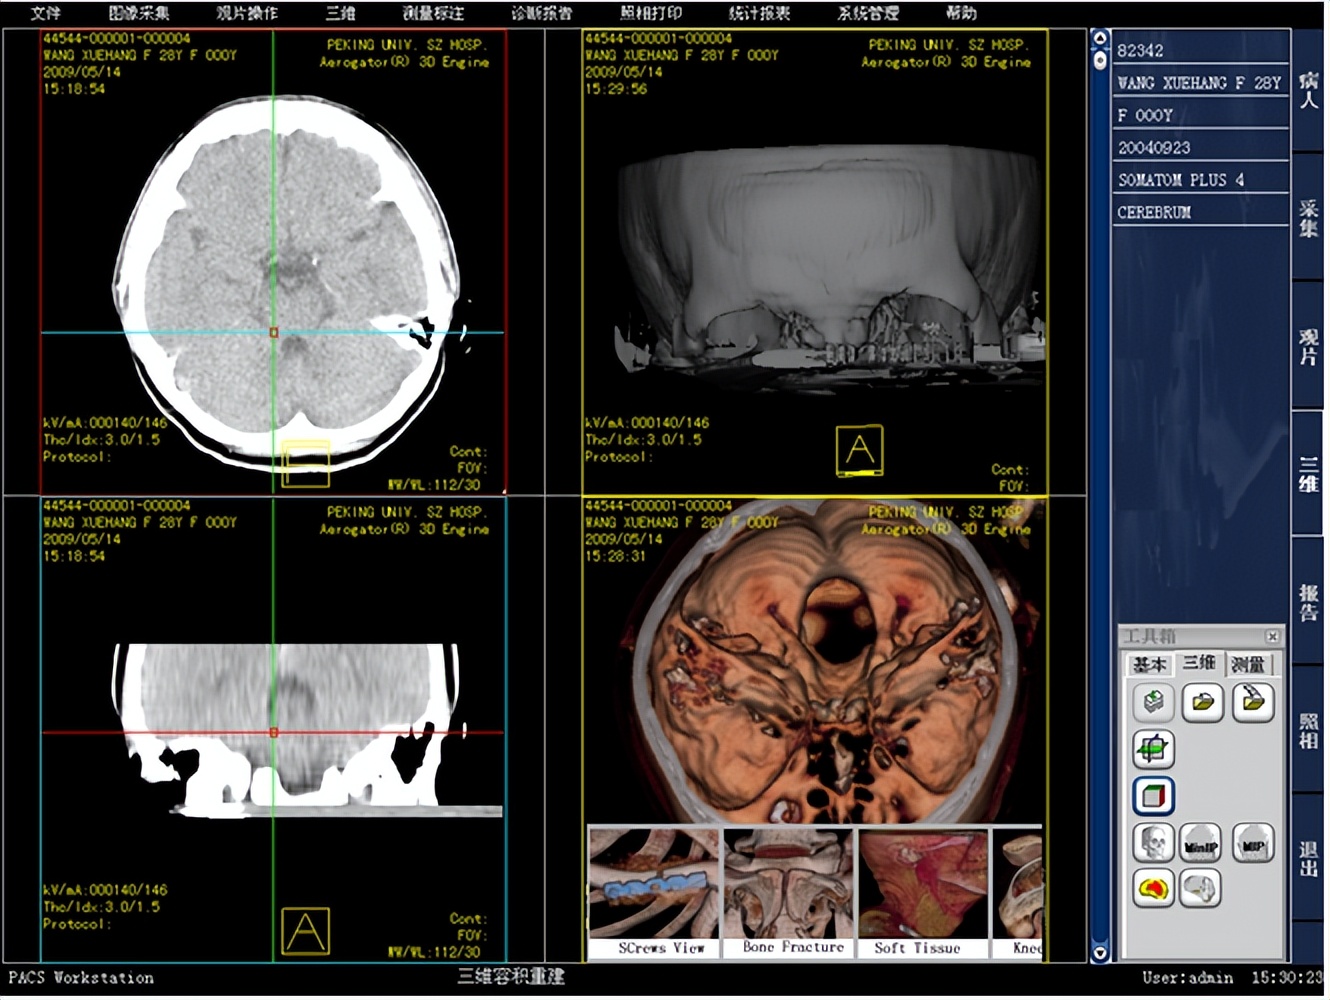 医学影像归档与通讯系统（PACS）系统源码 PACS三维图像处理_显示模式_06